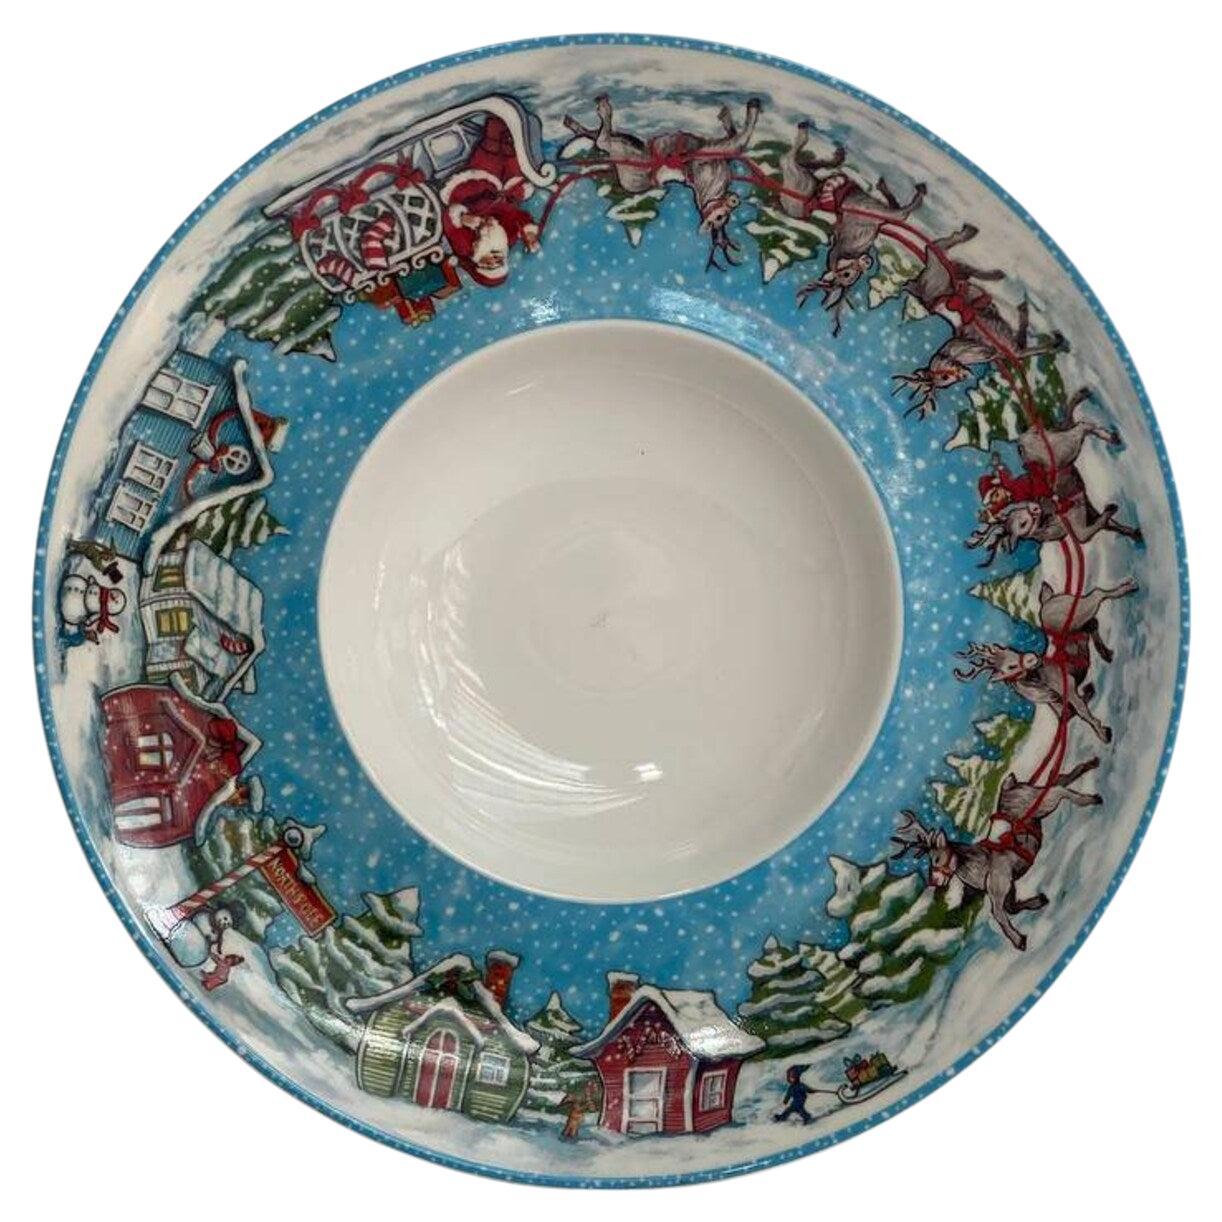 Magnifique assiette de Noël de Villeroy & Boch  Plaque de porcelaine